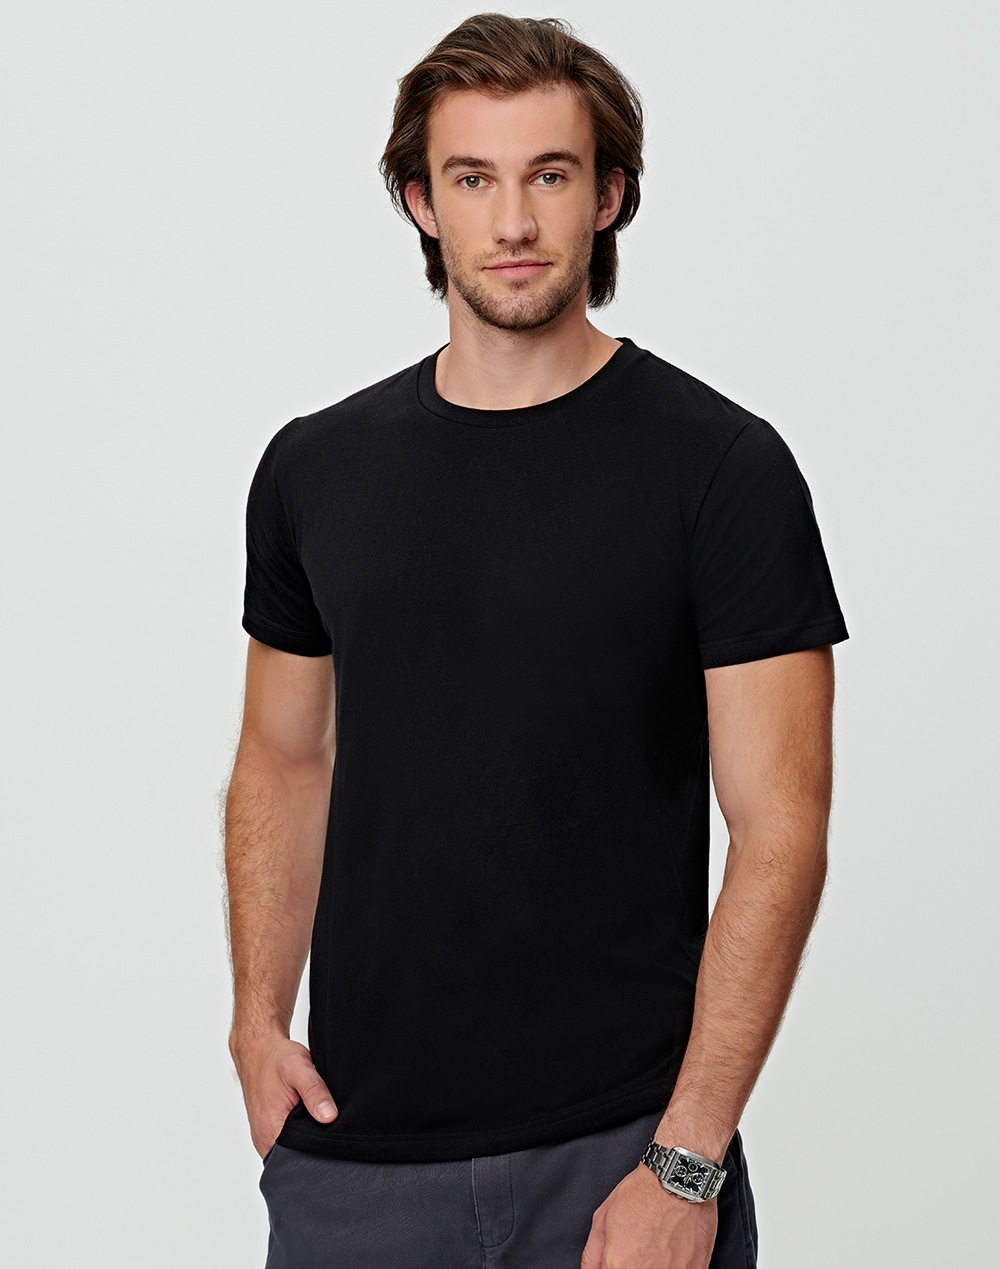 
Custom Printed Premium T-Shirts Men's Regular Fit Online in Perth Australia